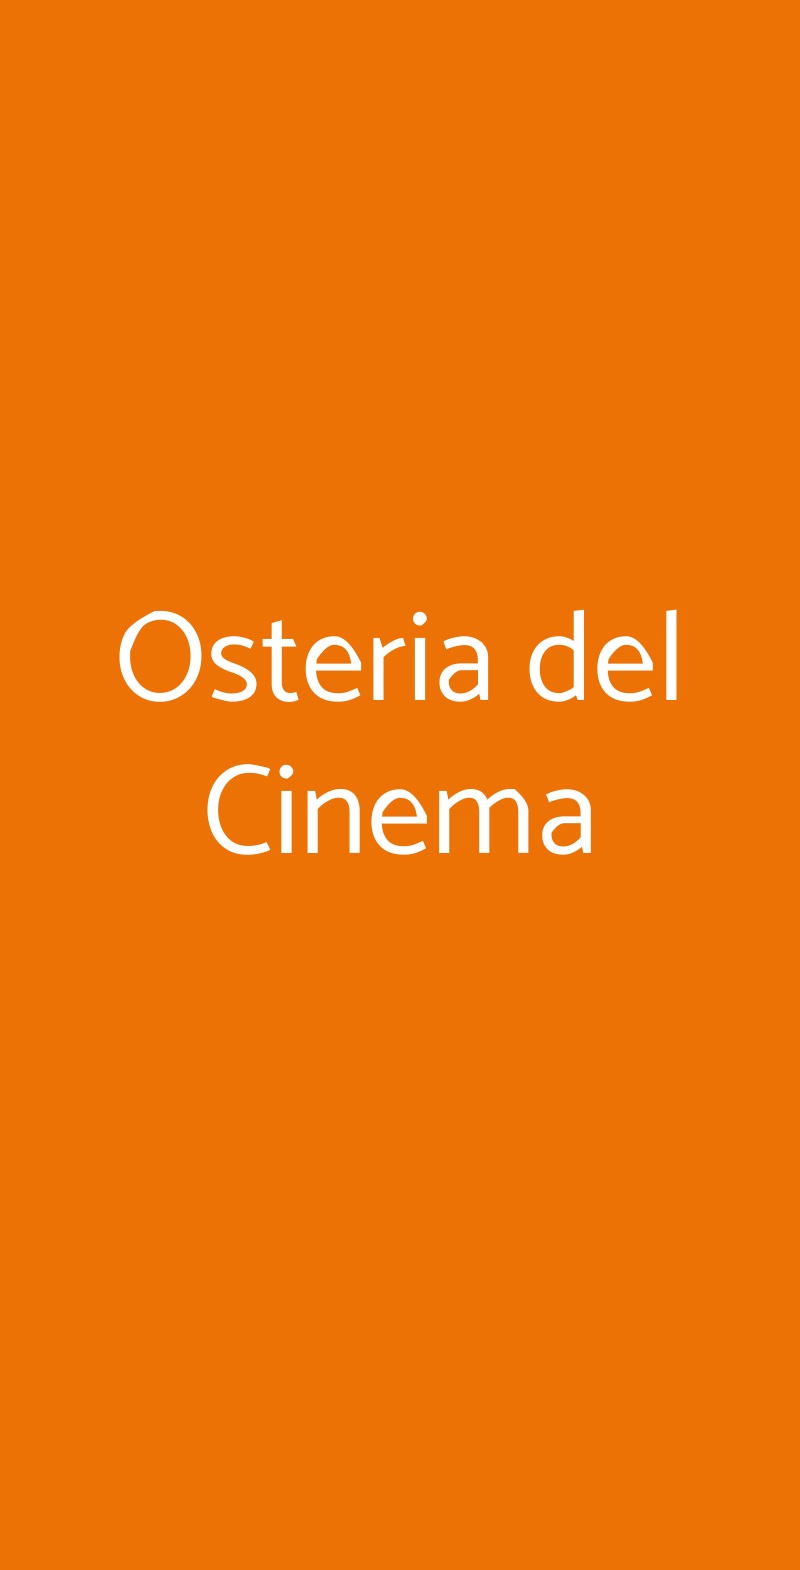 Osteria del Cinema Milano menù 1 pagina